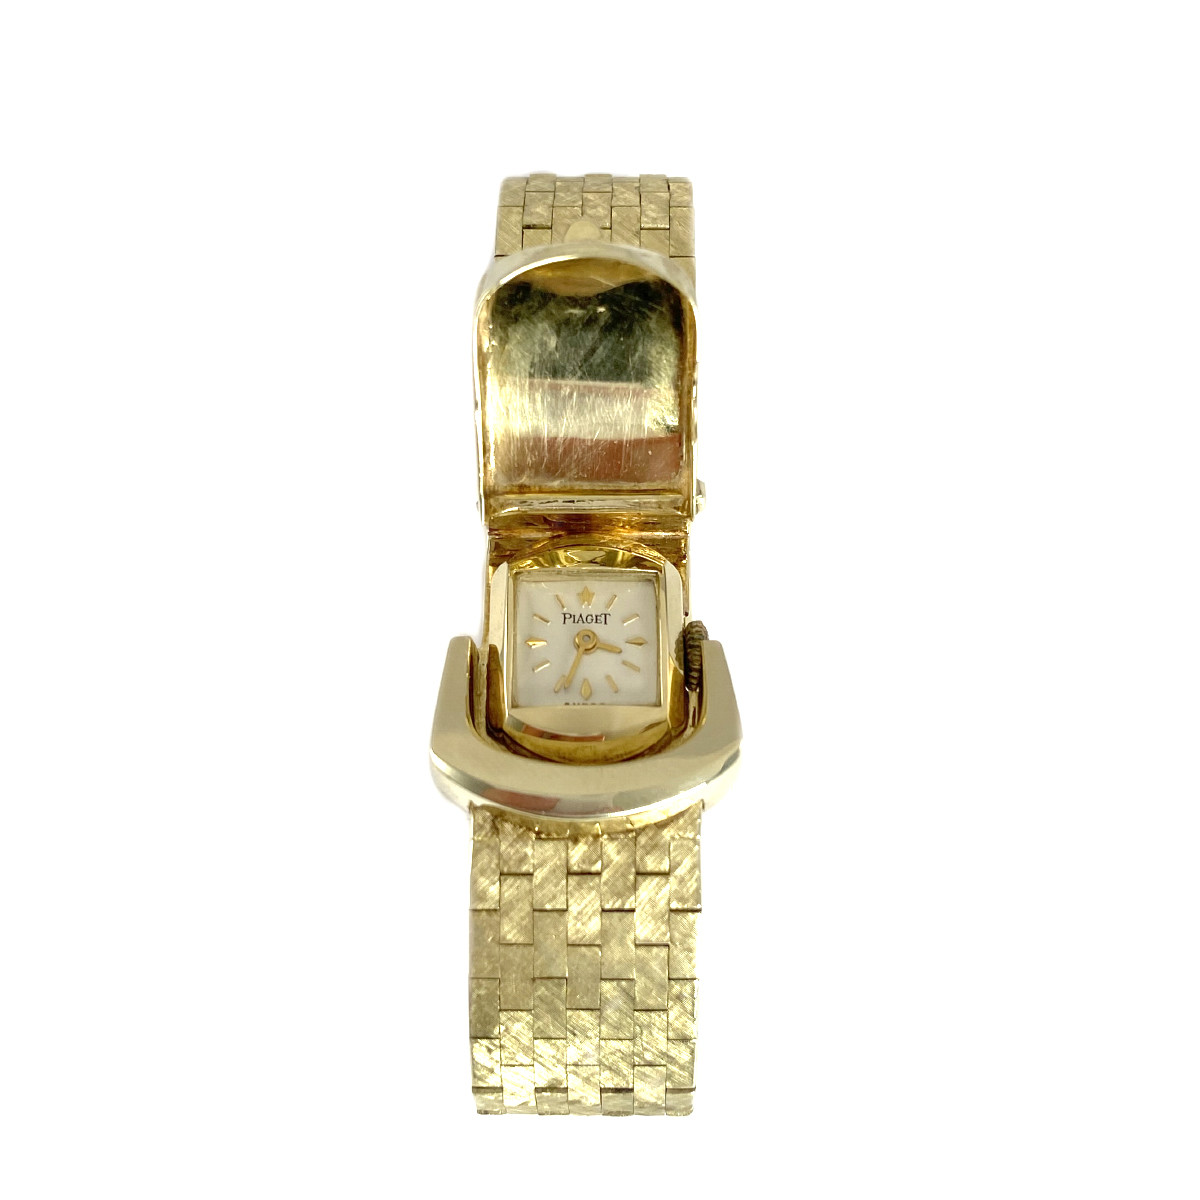 Montre d'occasion bracelet Piaget or 585 jaune 17 cm